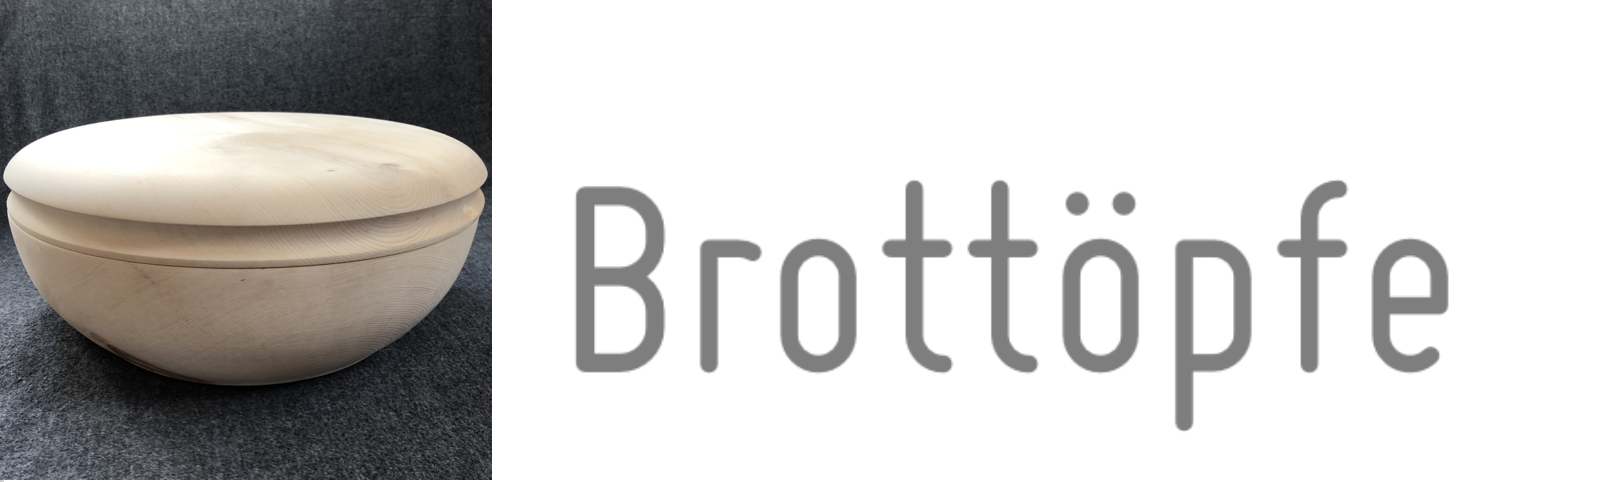 FreyStil-Brottopf-Brotdose-Brotkasten-Zirbe